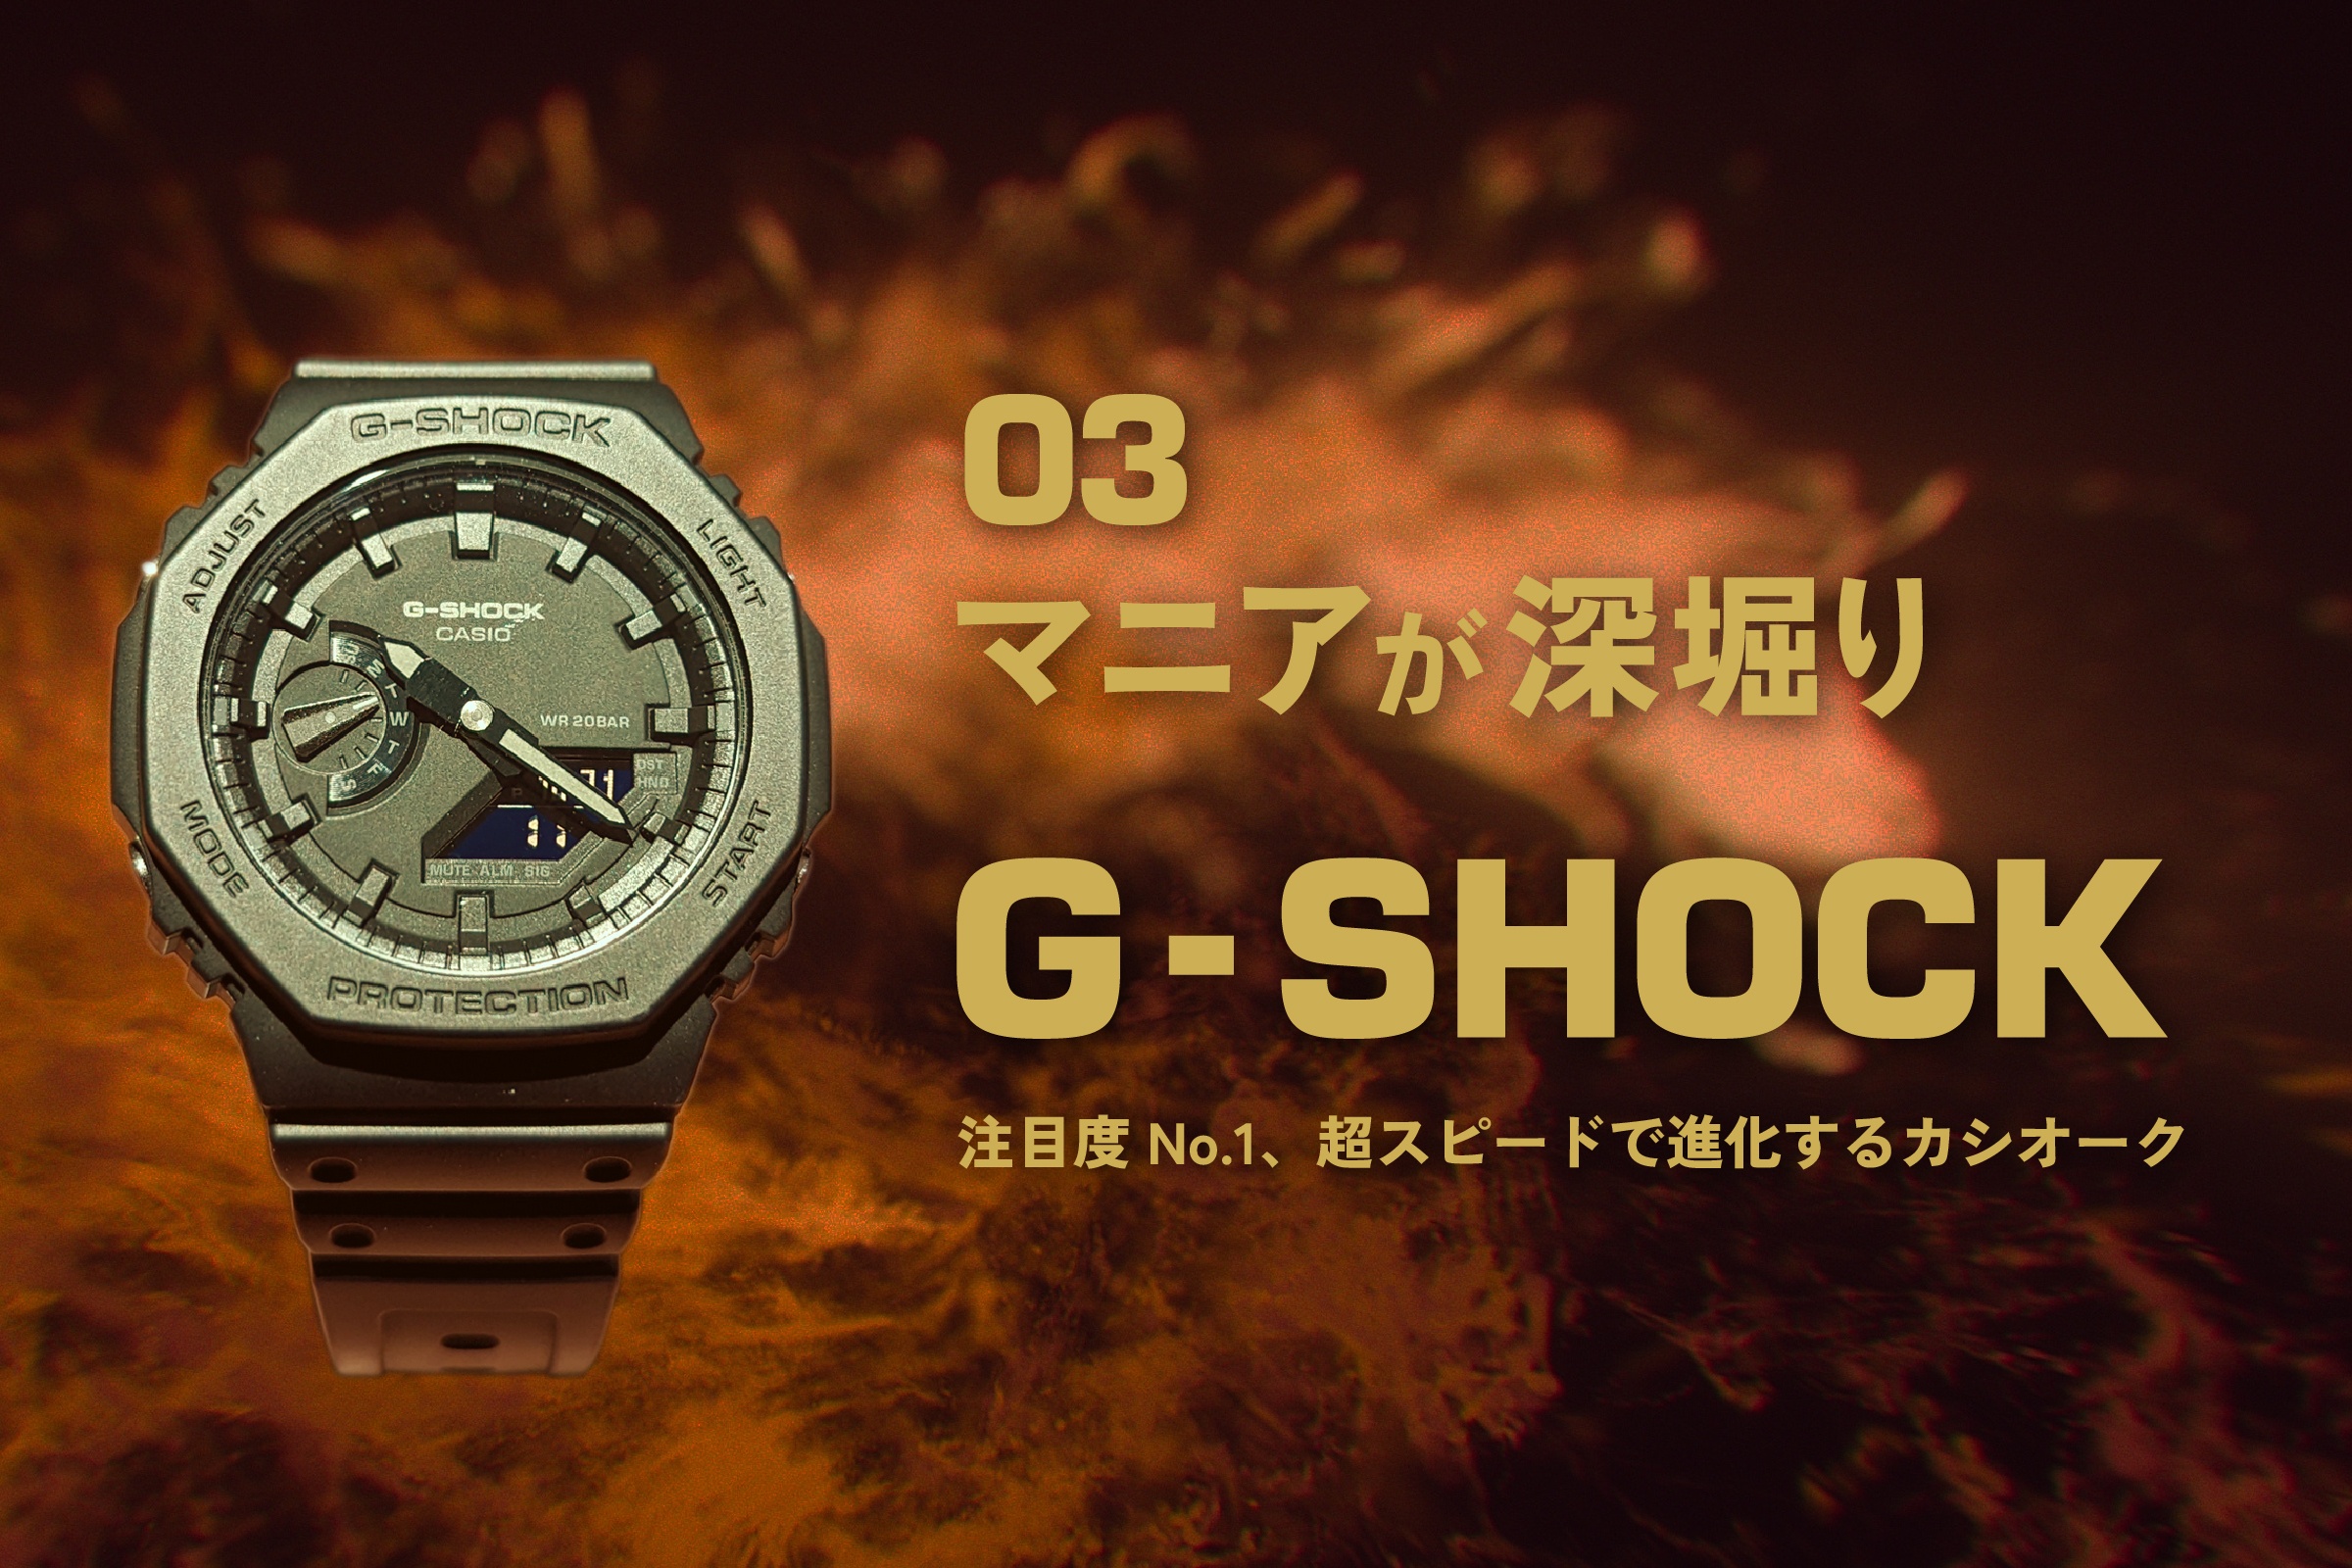 美品 カシオ G-SHOCK カシオーク モンクレール 腕時計【59935】